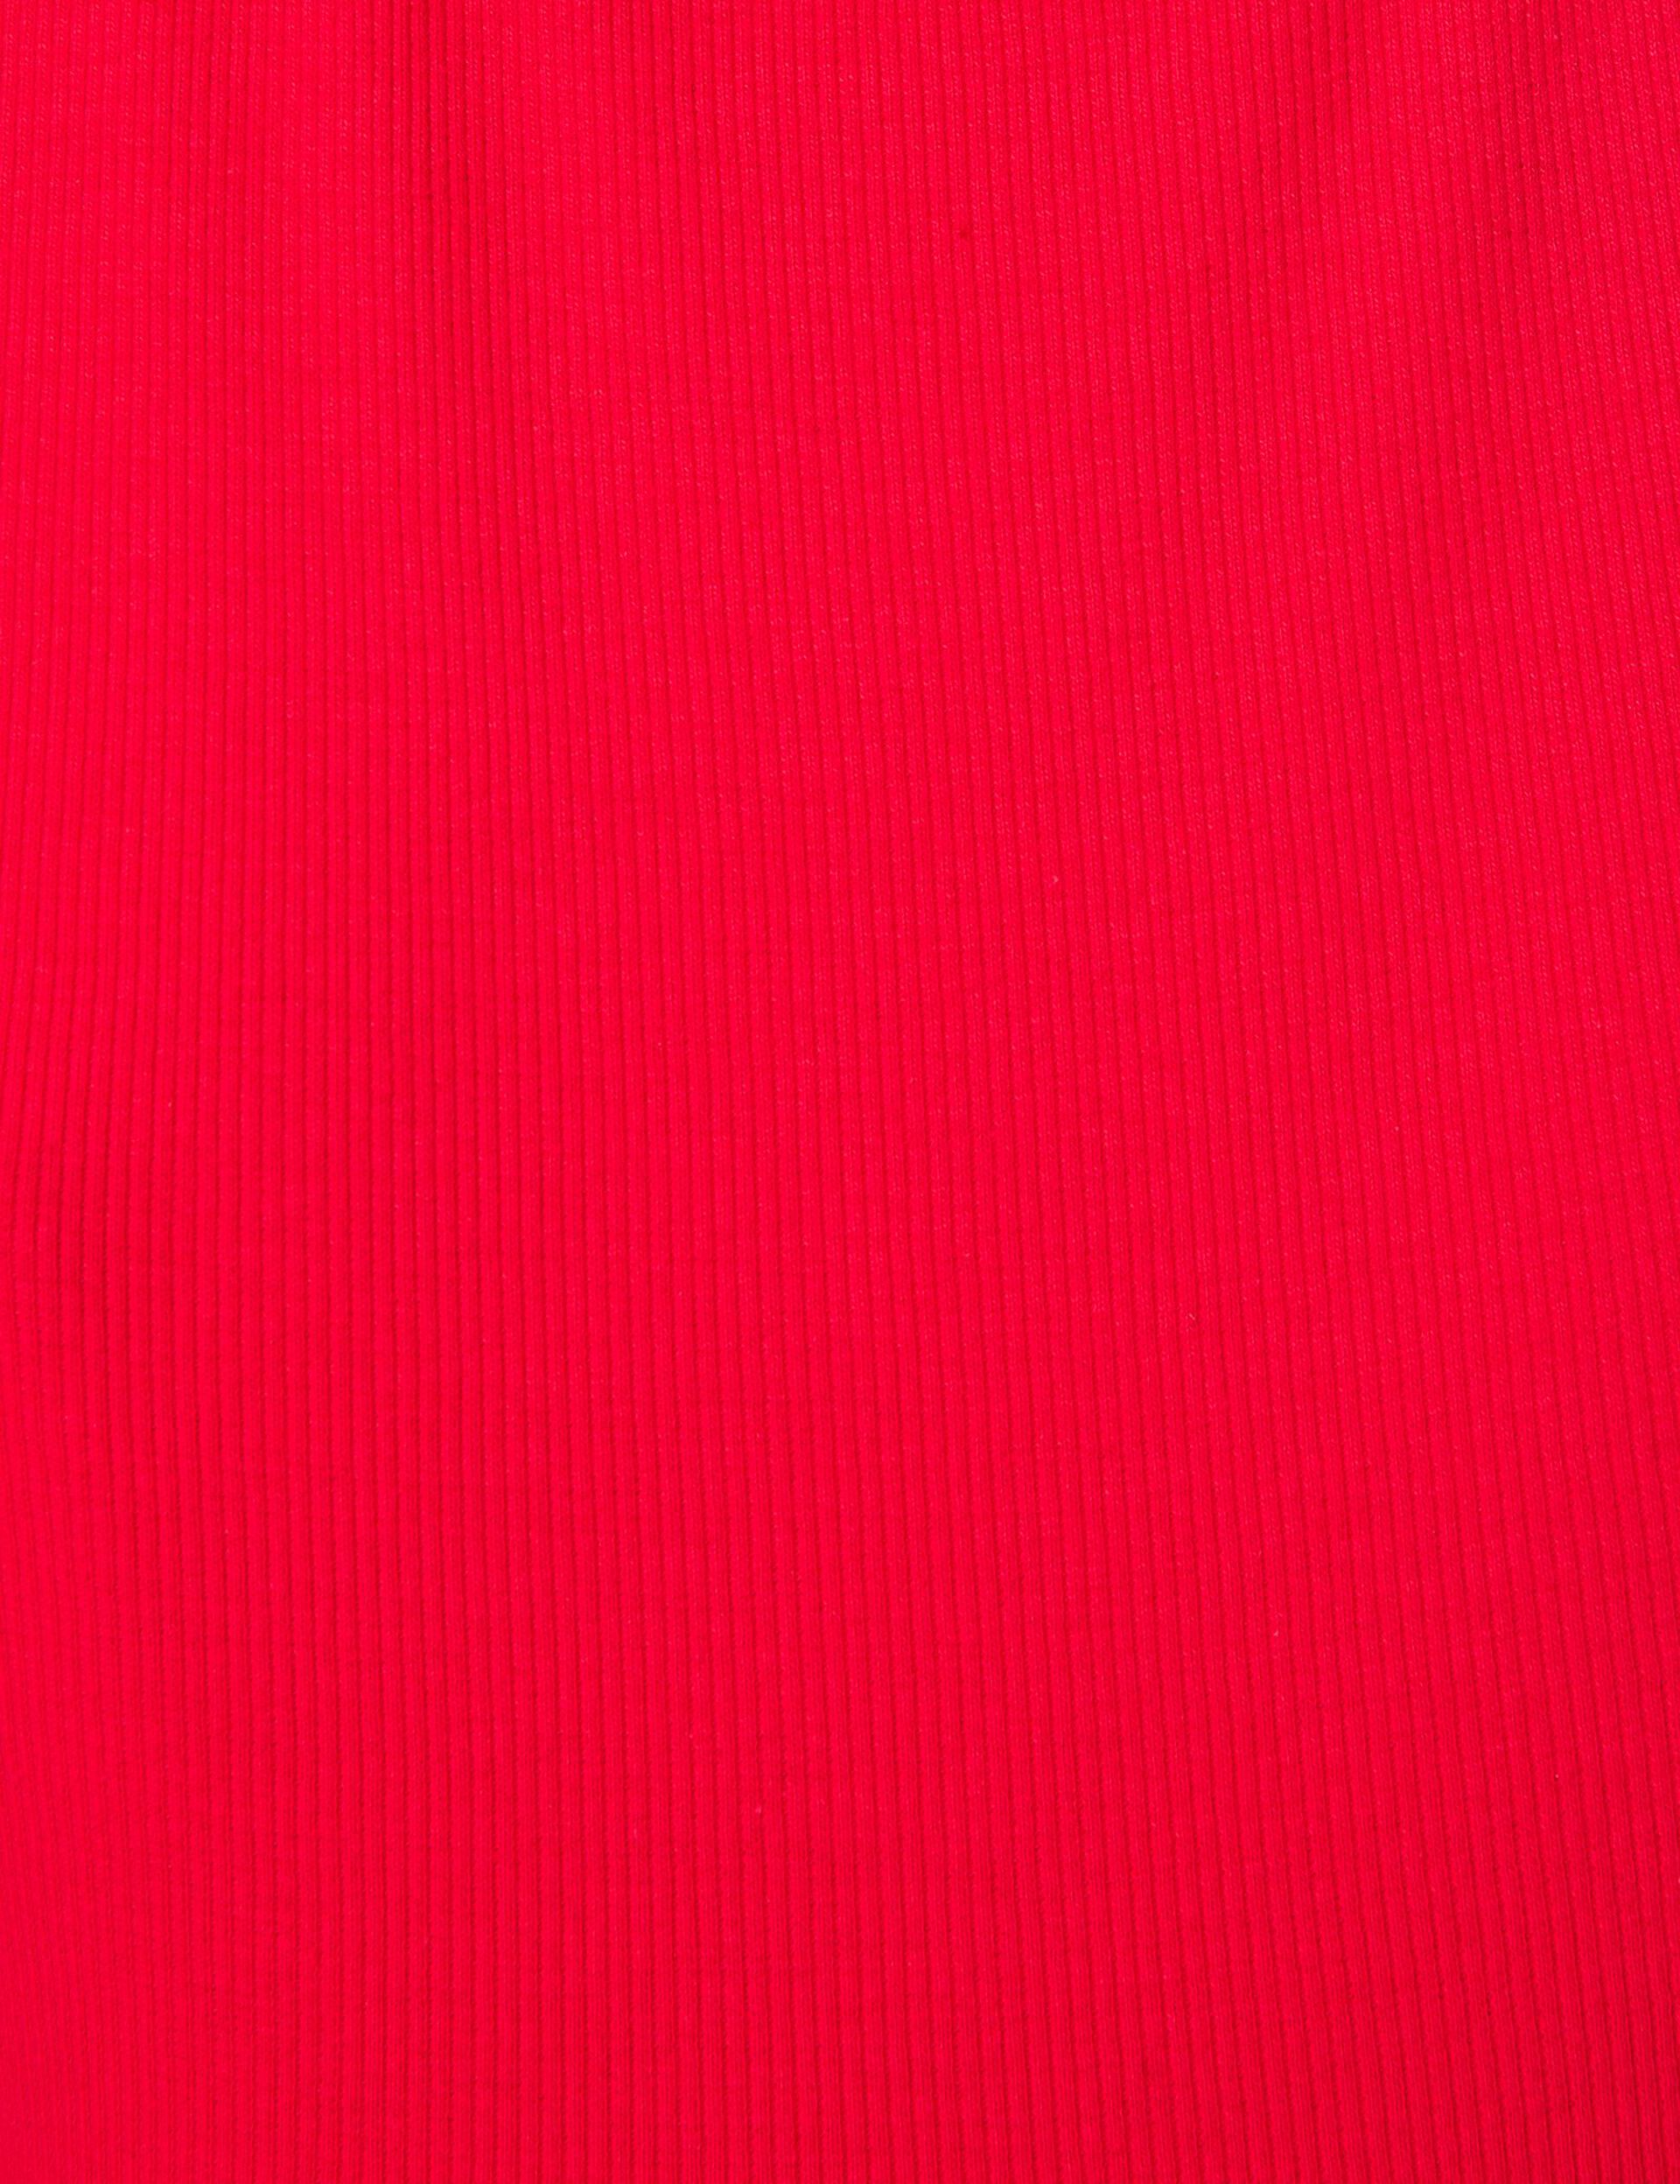 Tee-shirt rouge avec découpes sur les manches